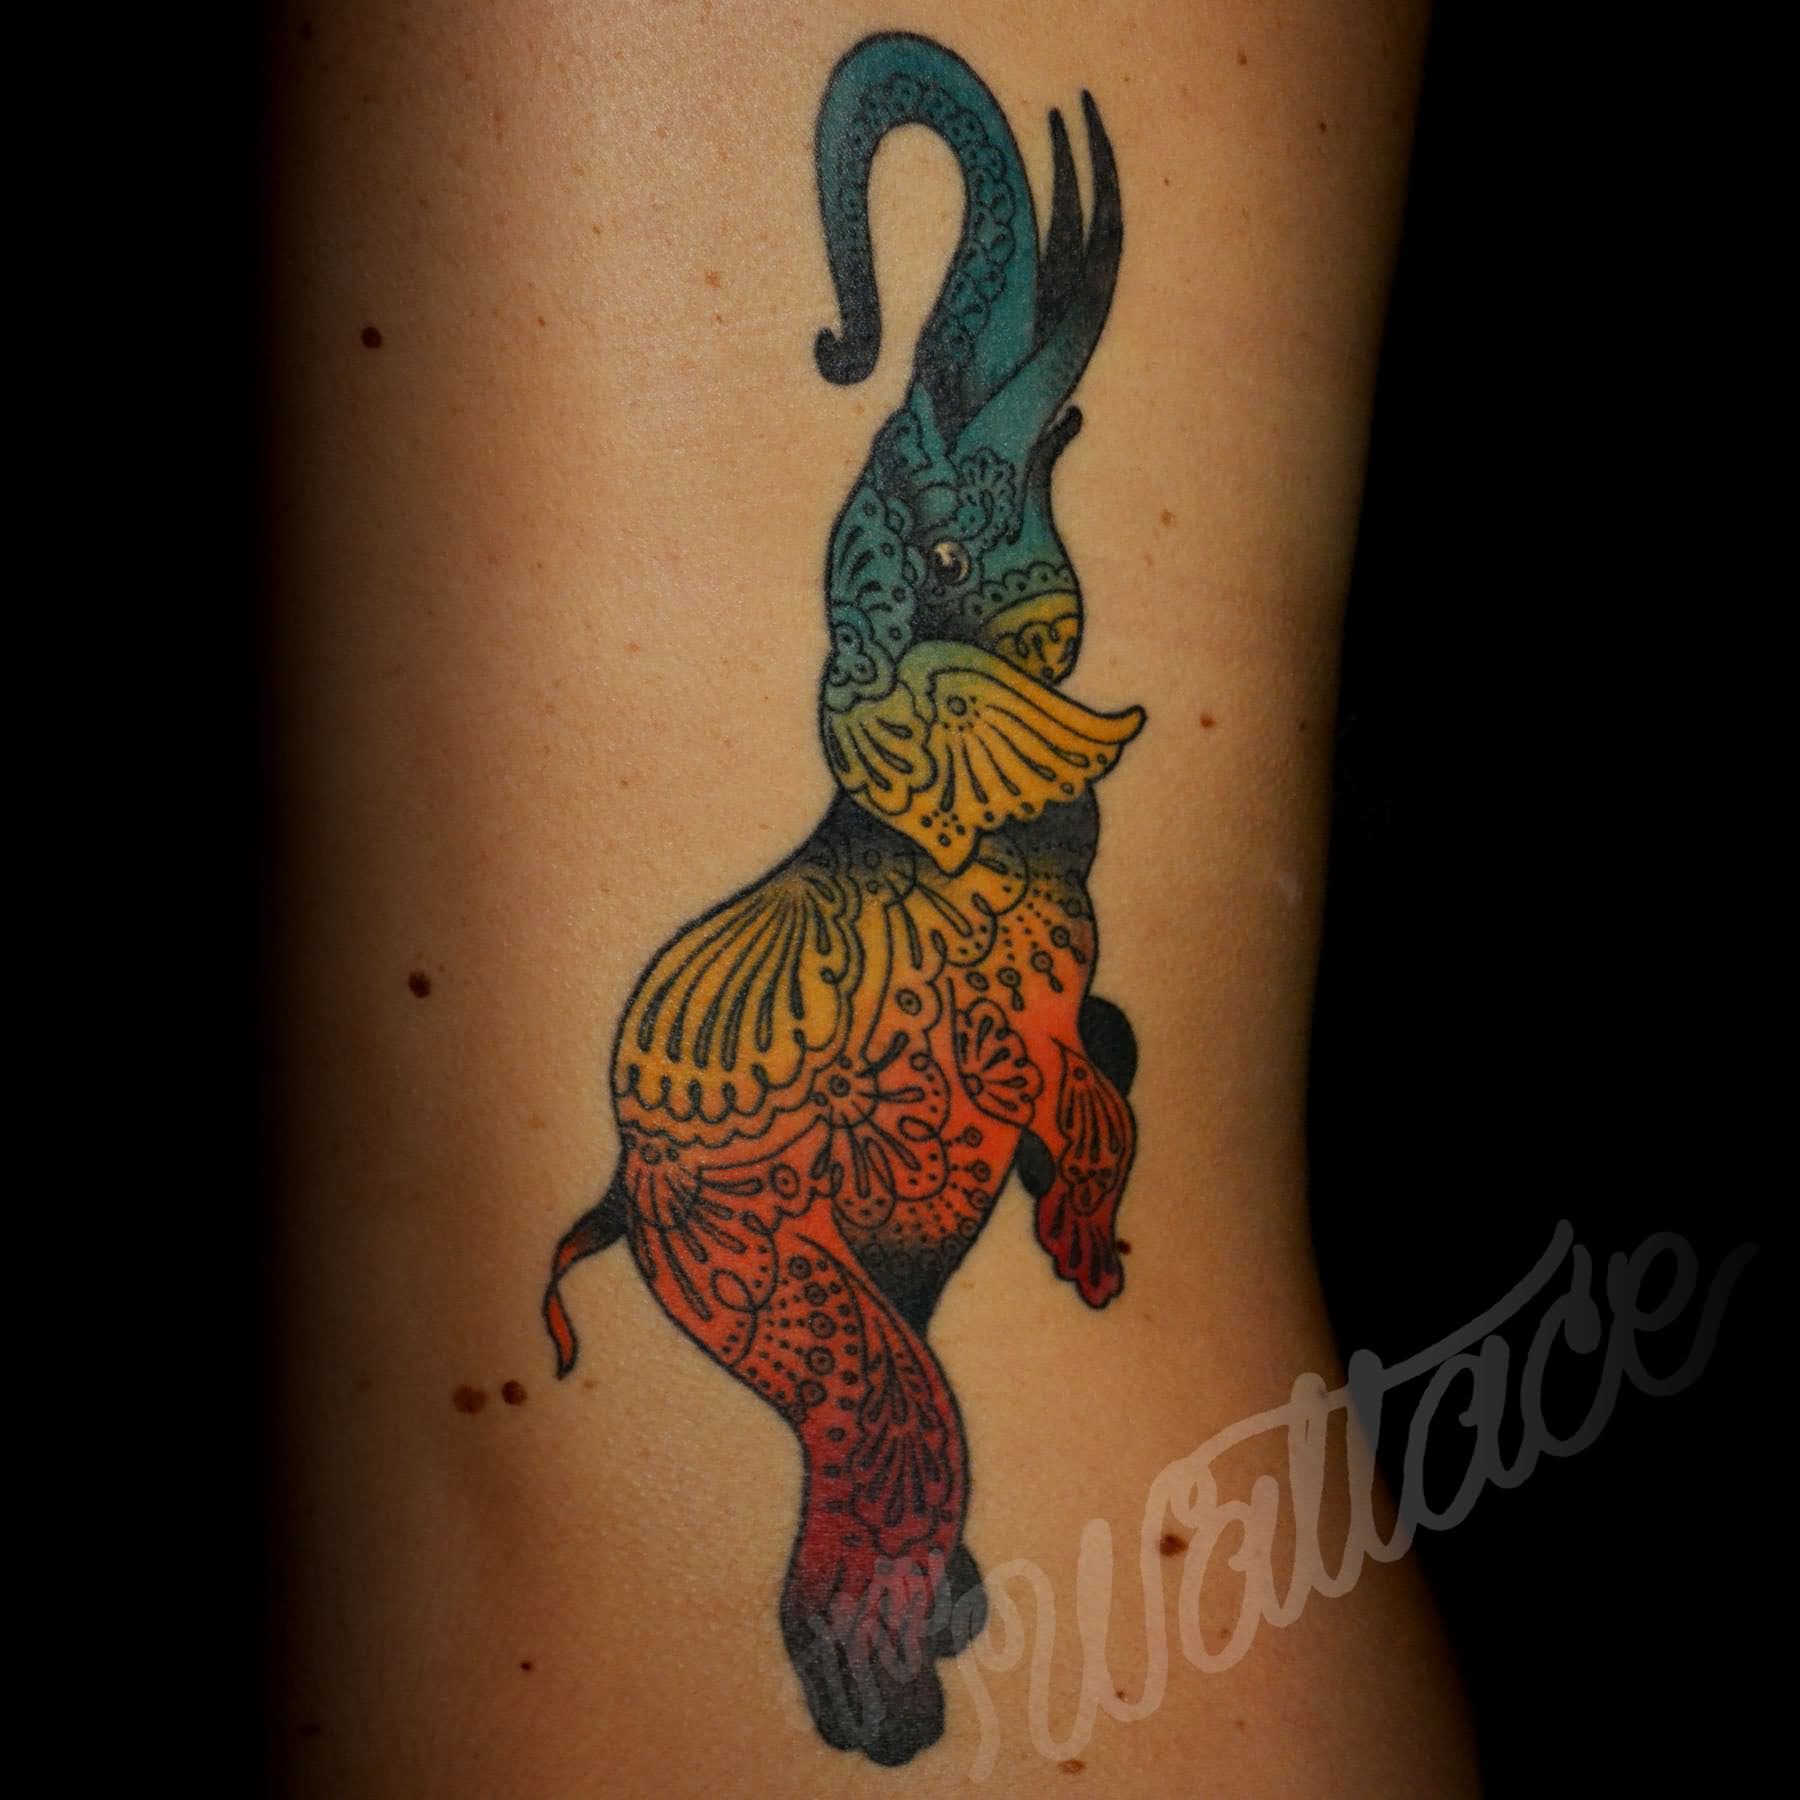 Amazing Colorful Elephant Tattoo Design